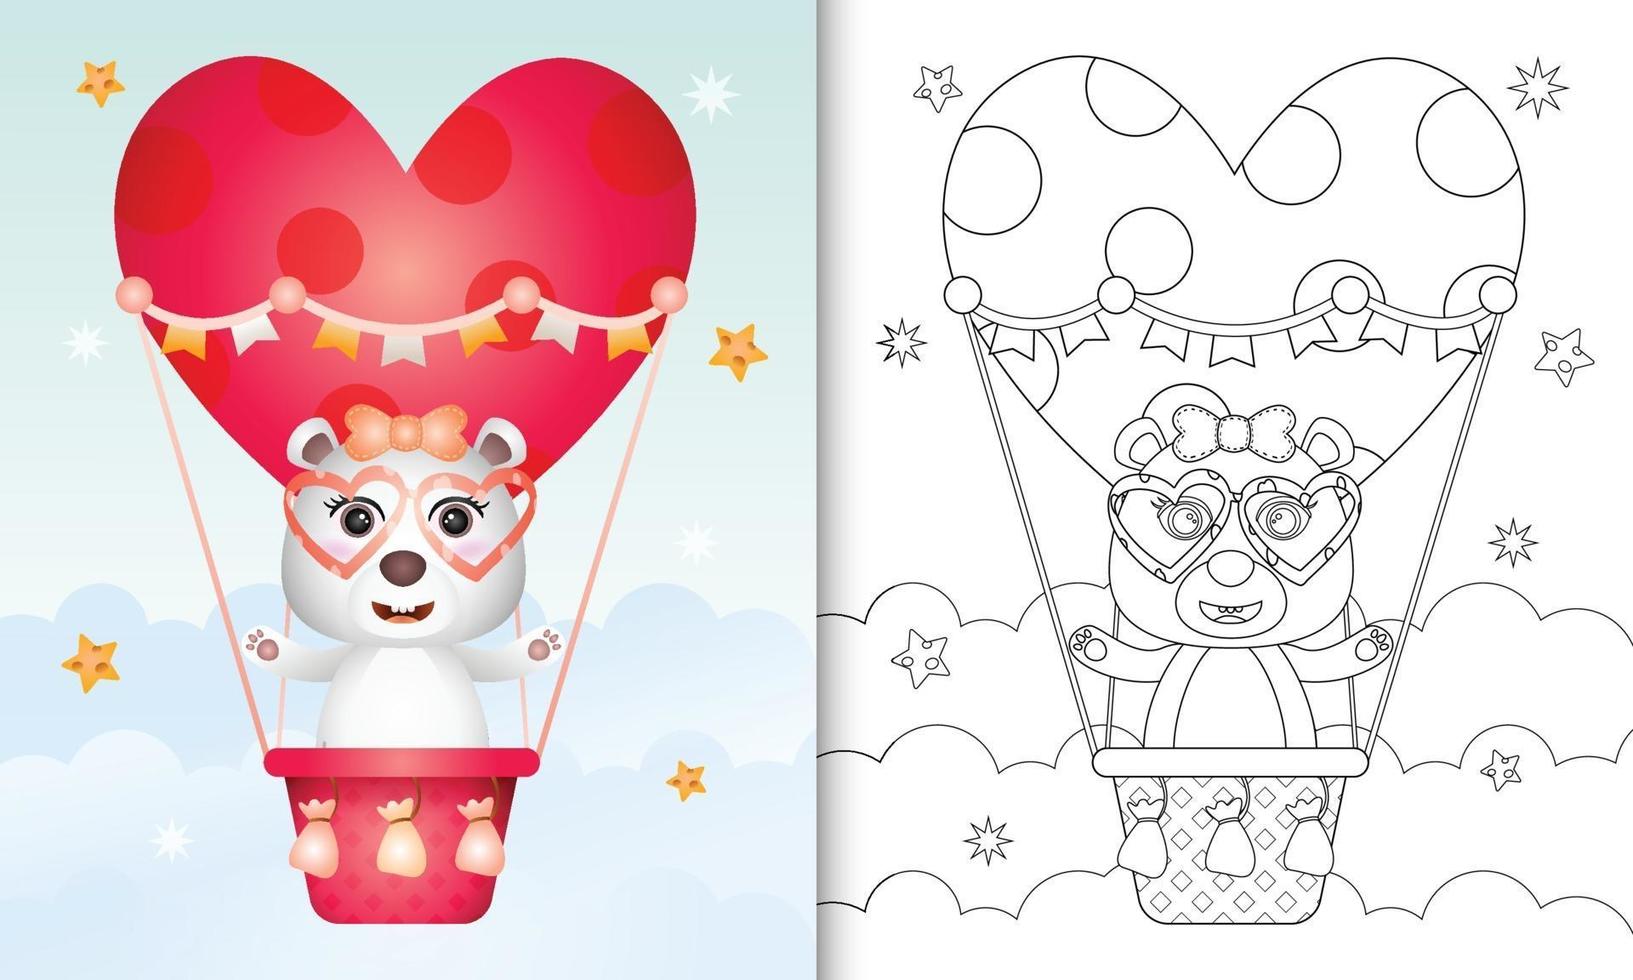 livre de coloriage pour les enfants avec une jolie femme ours polaire sur un ballon à air chaud vecteur